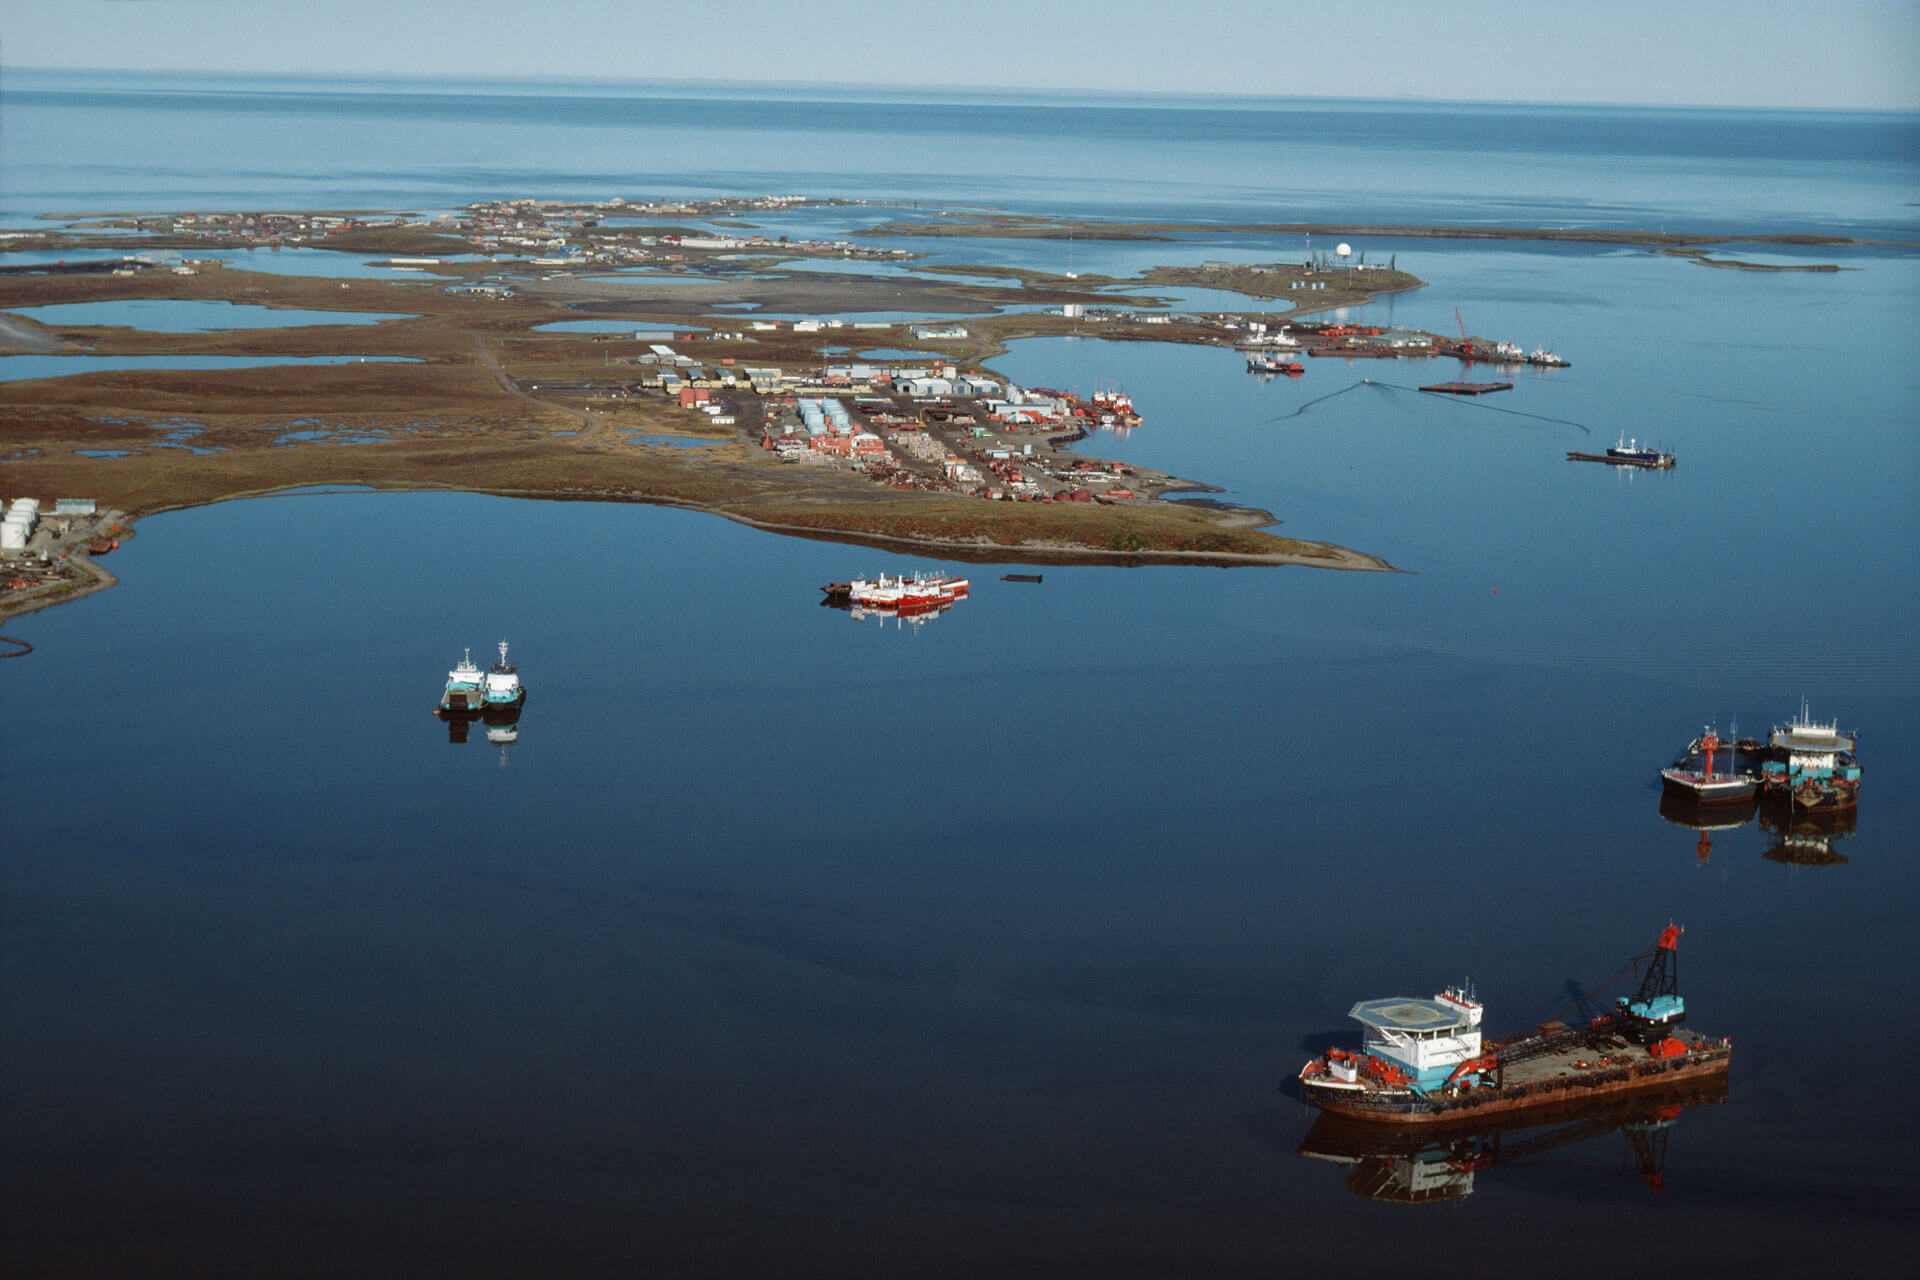 View of Tuktoyaktuk, N.W.T. from the Arctic Ocean